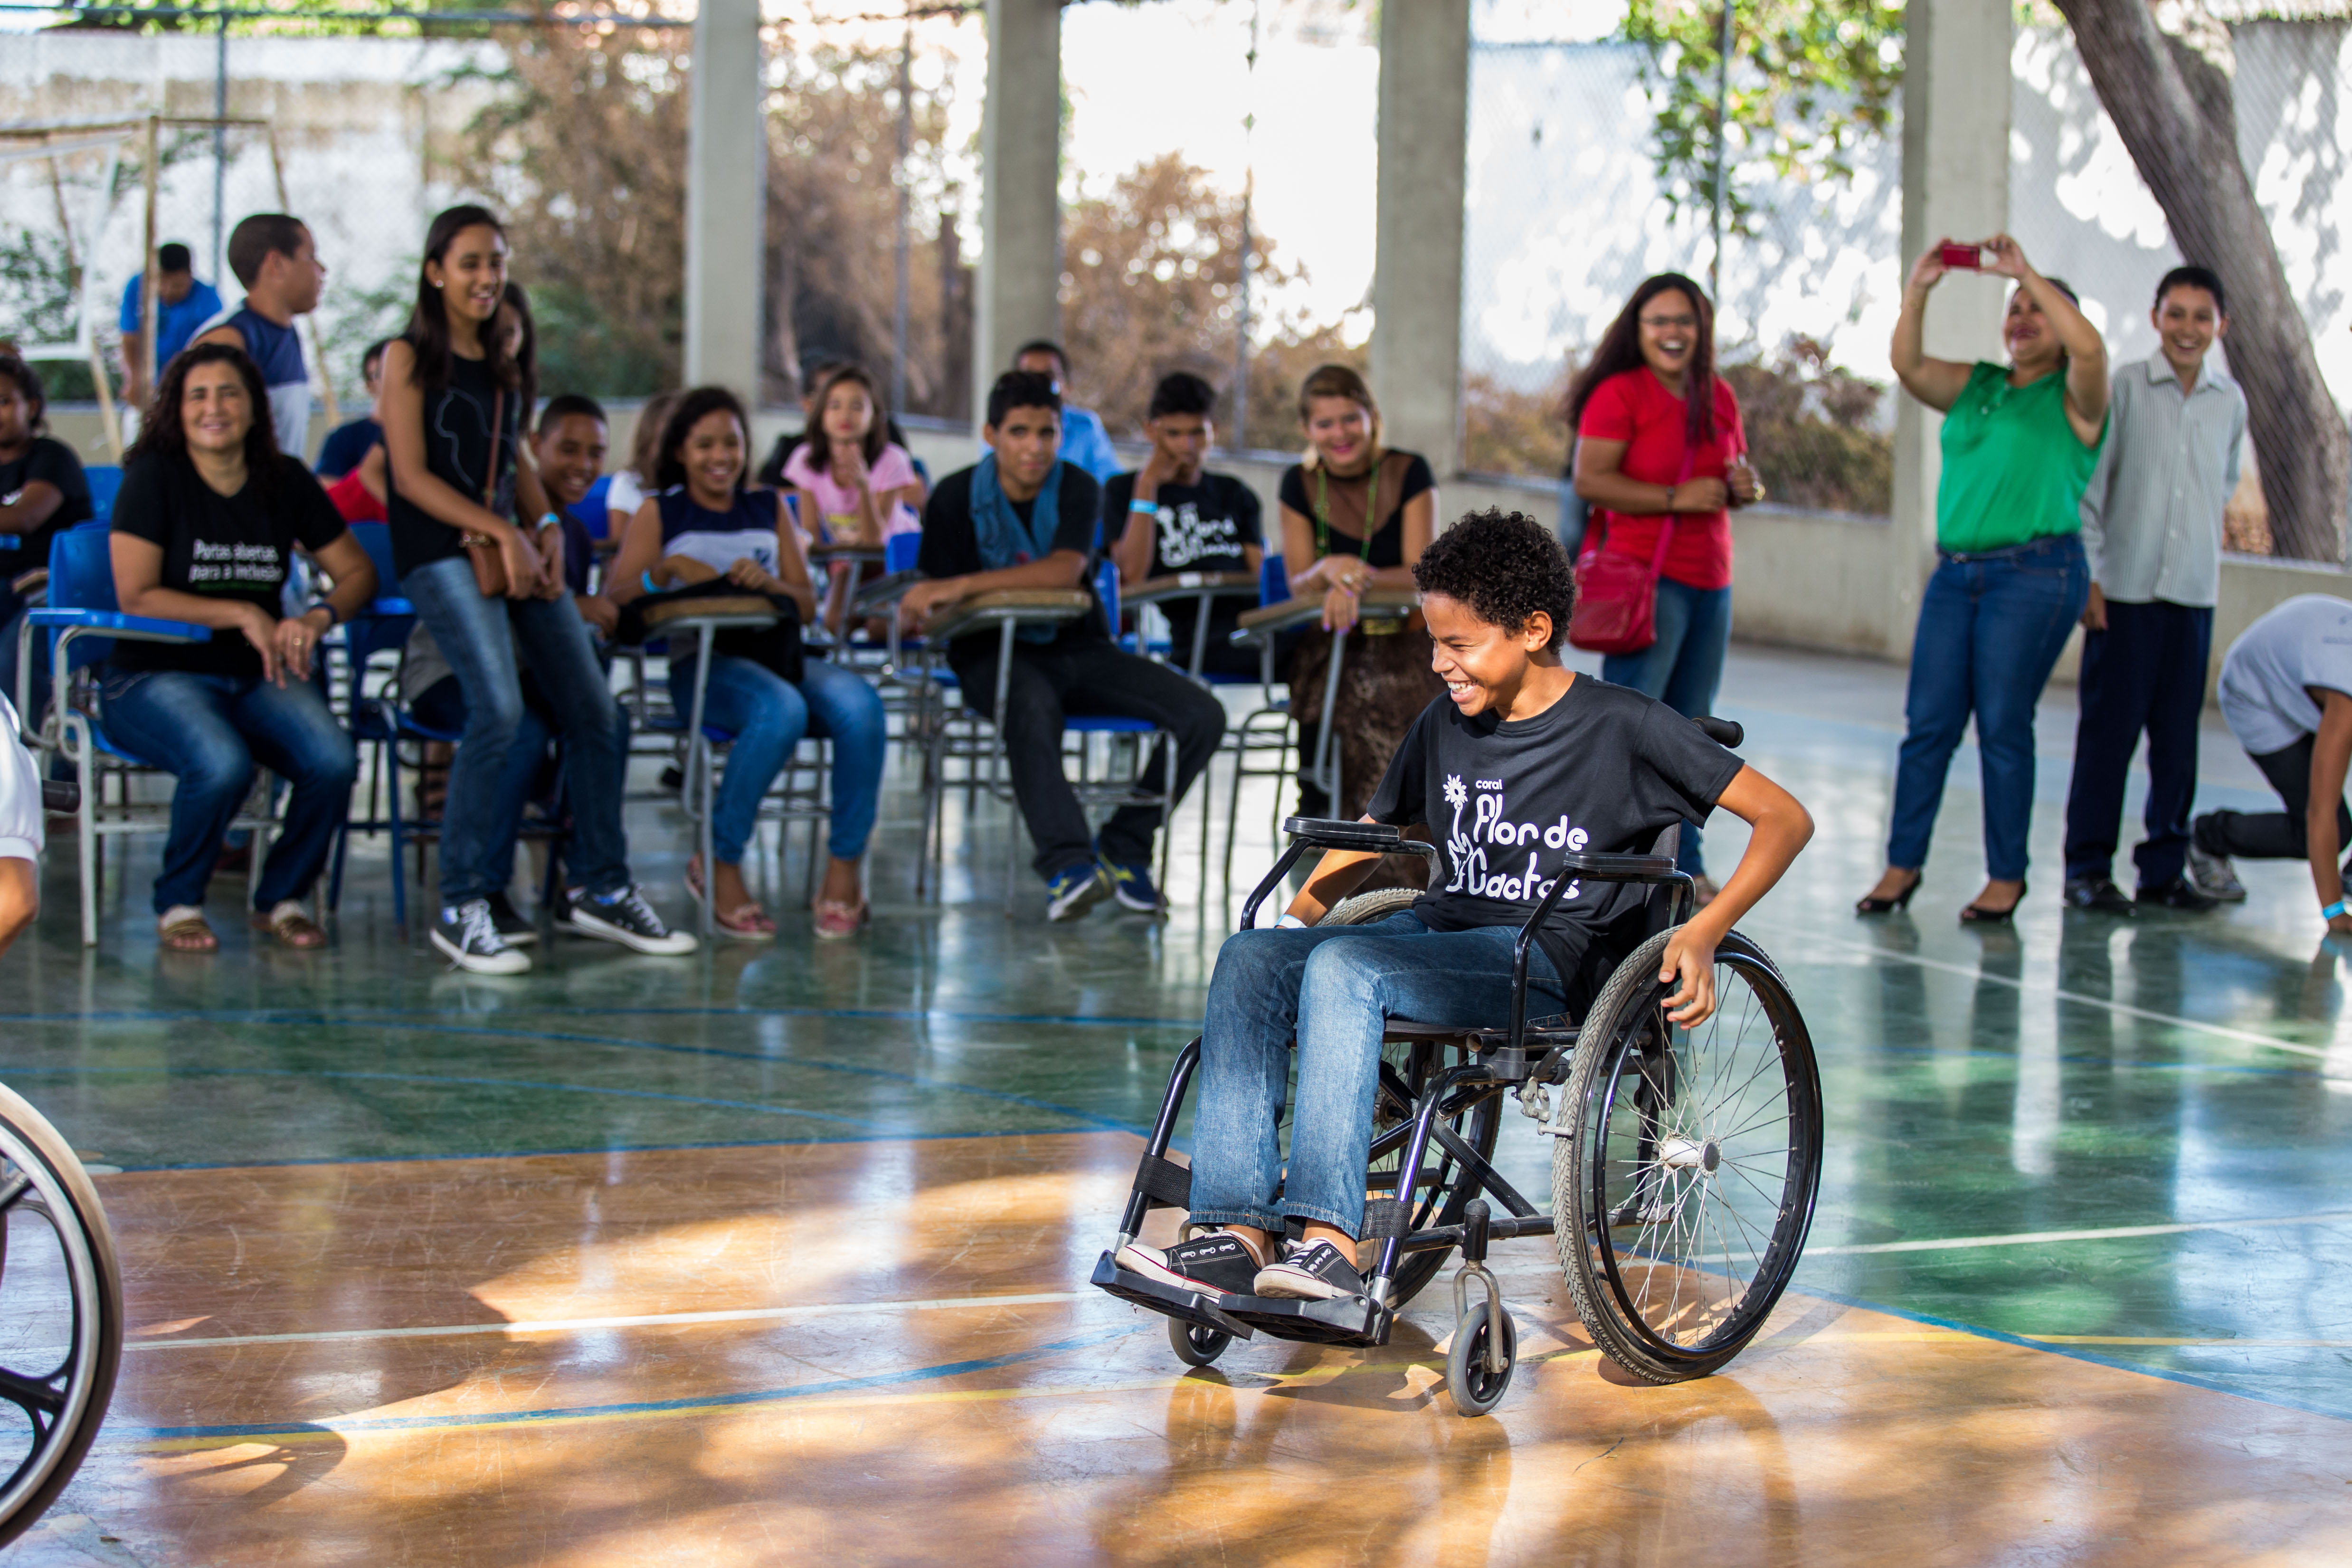 Diversos estudantes entre 10 e 15 anos estão sentados em cadeiras no centro de uma quadra escolar. Um garoto em uma cadeira de rodas se destaca no meio.